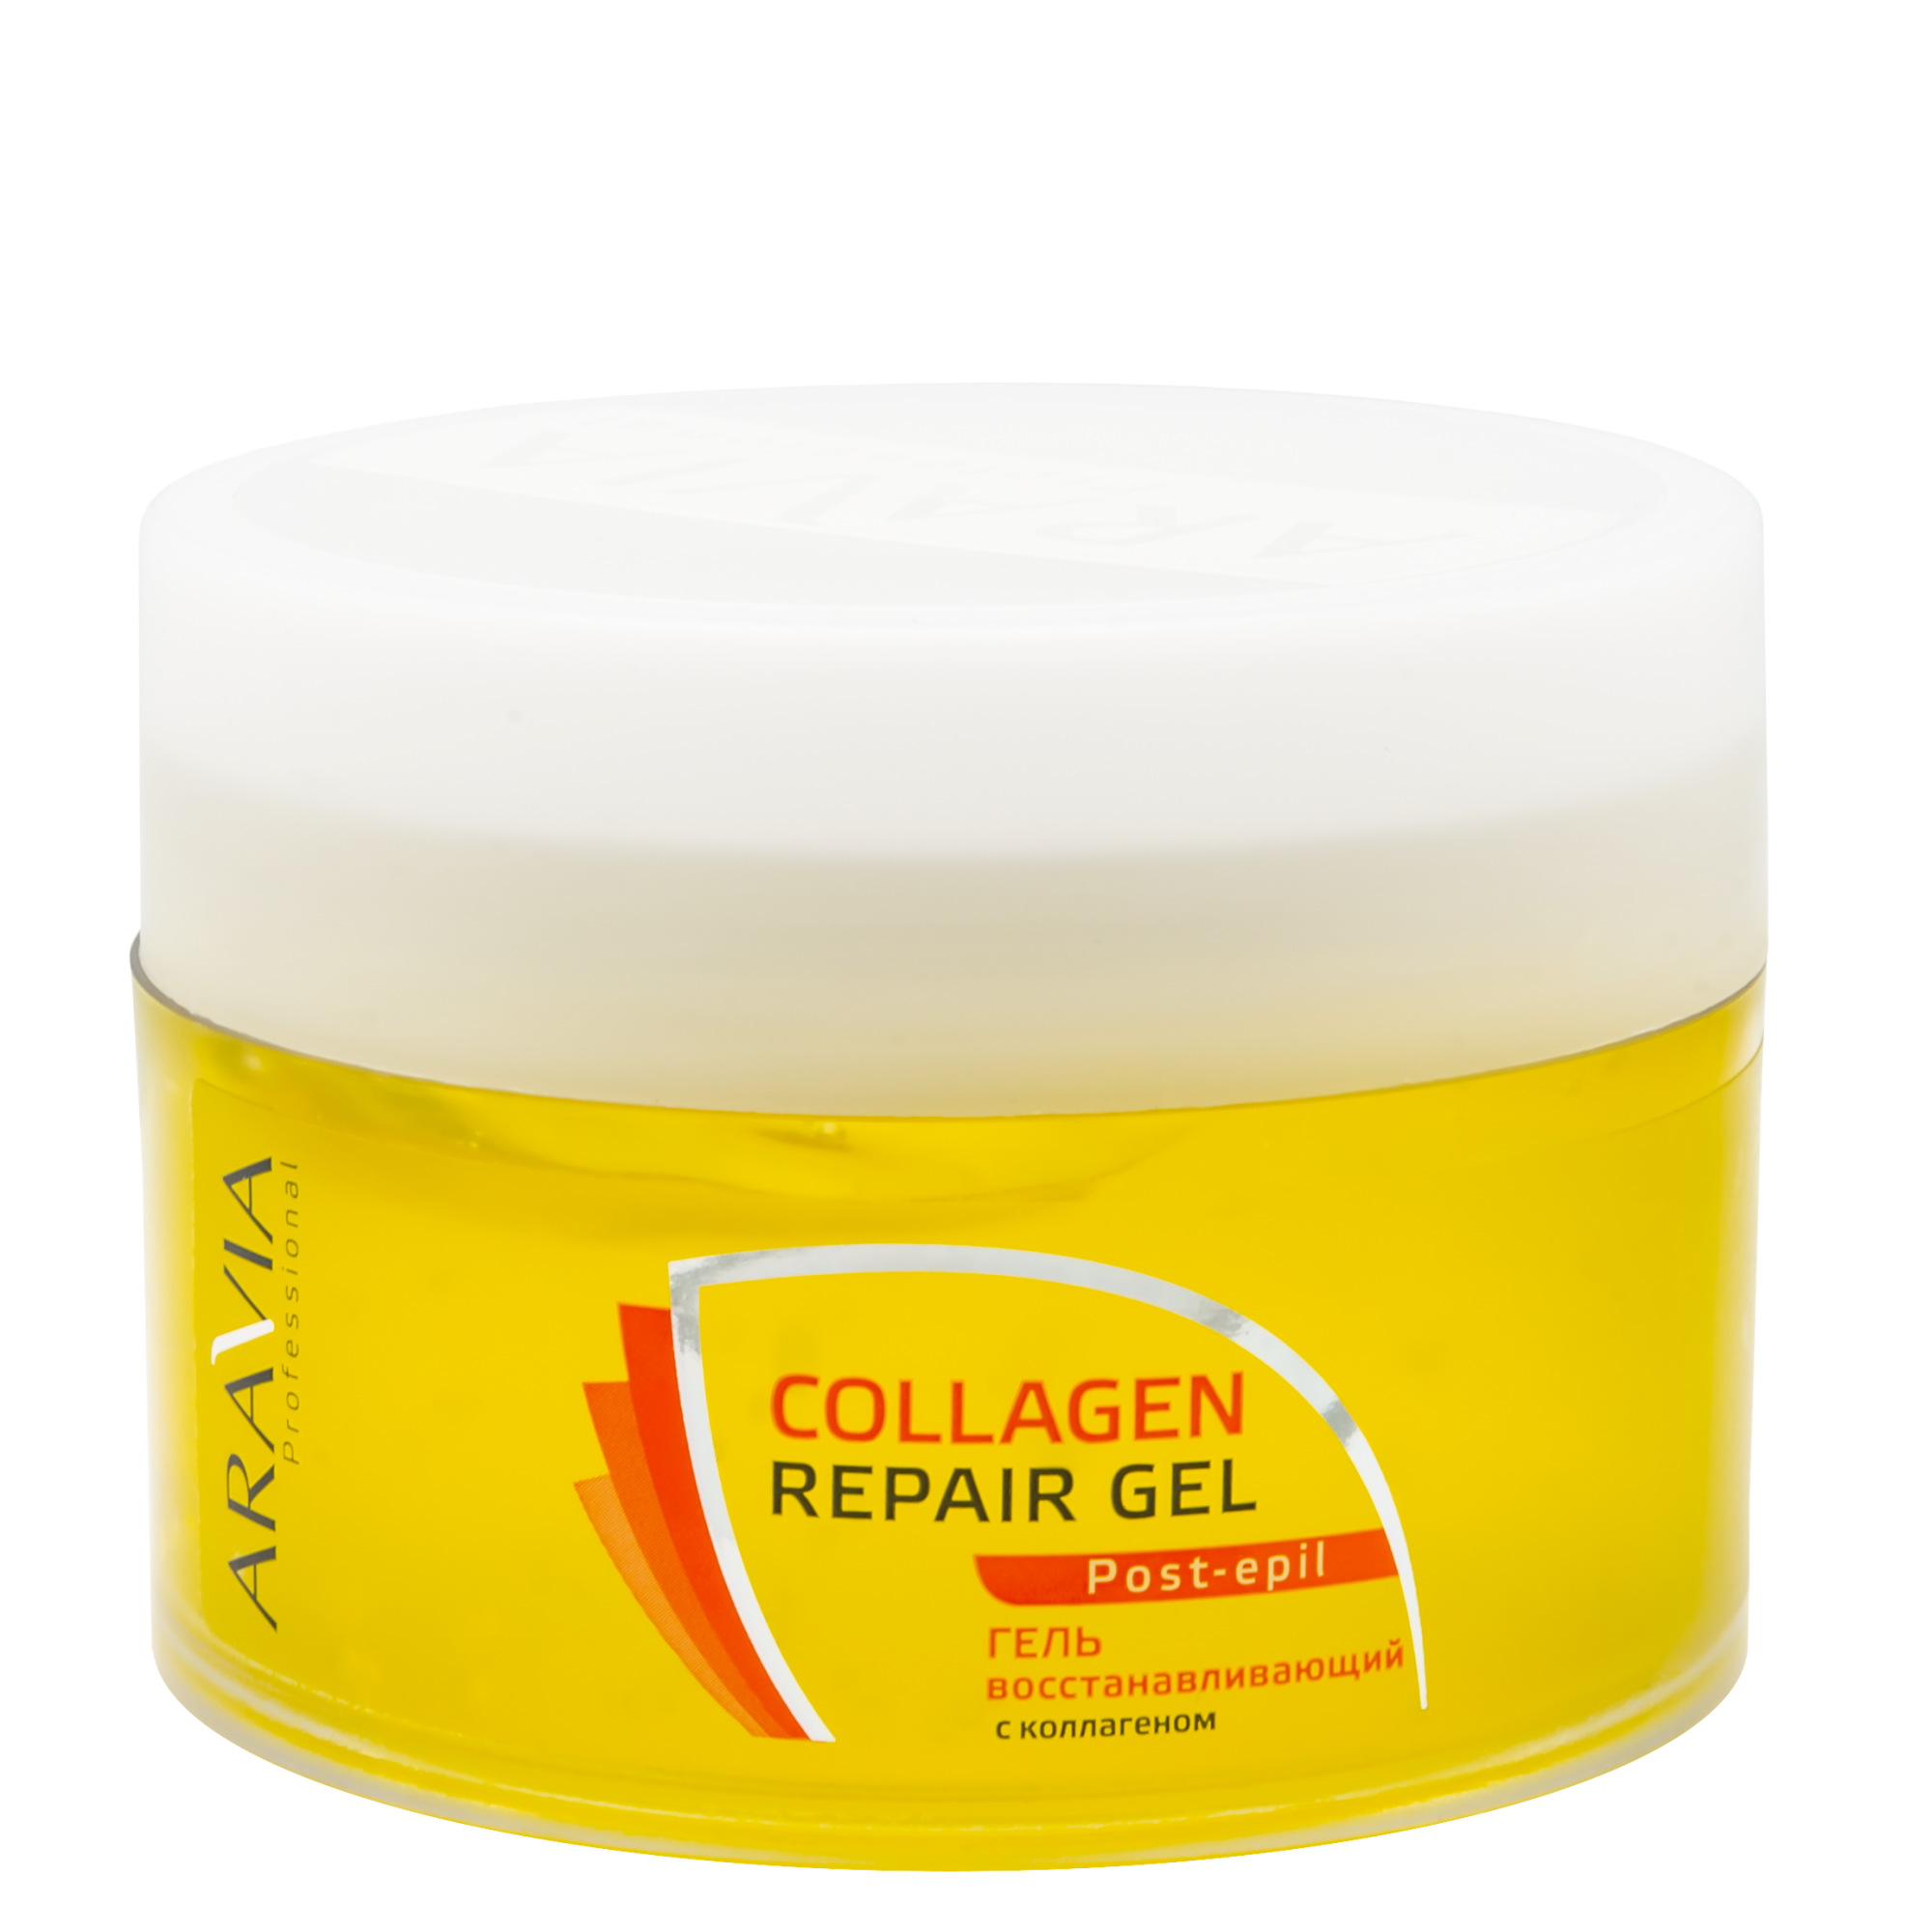 Aravia Professional Гель восстанавливающий с коллагеном Collagen Repair Gel, 200мл